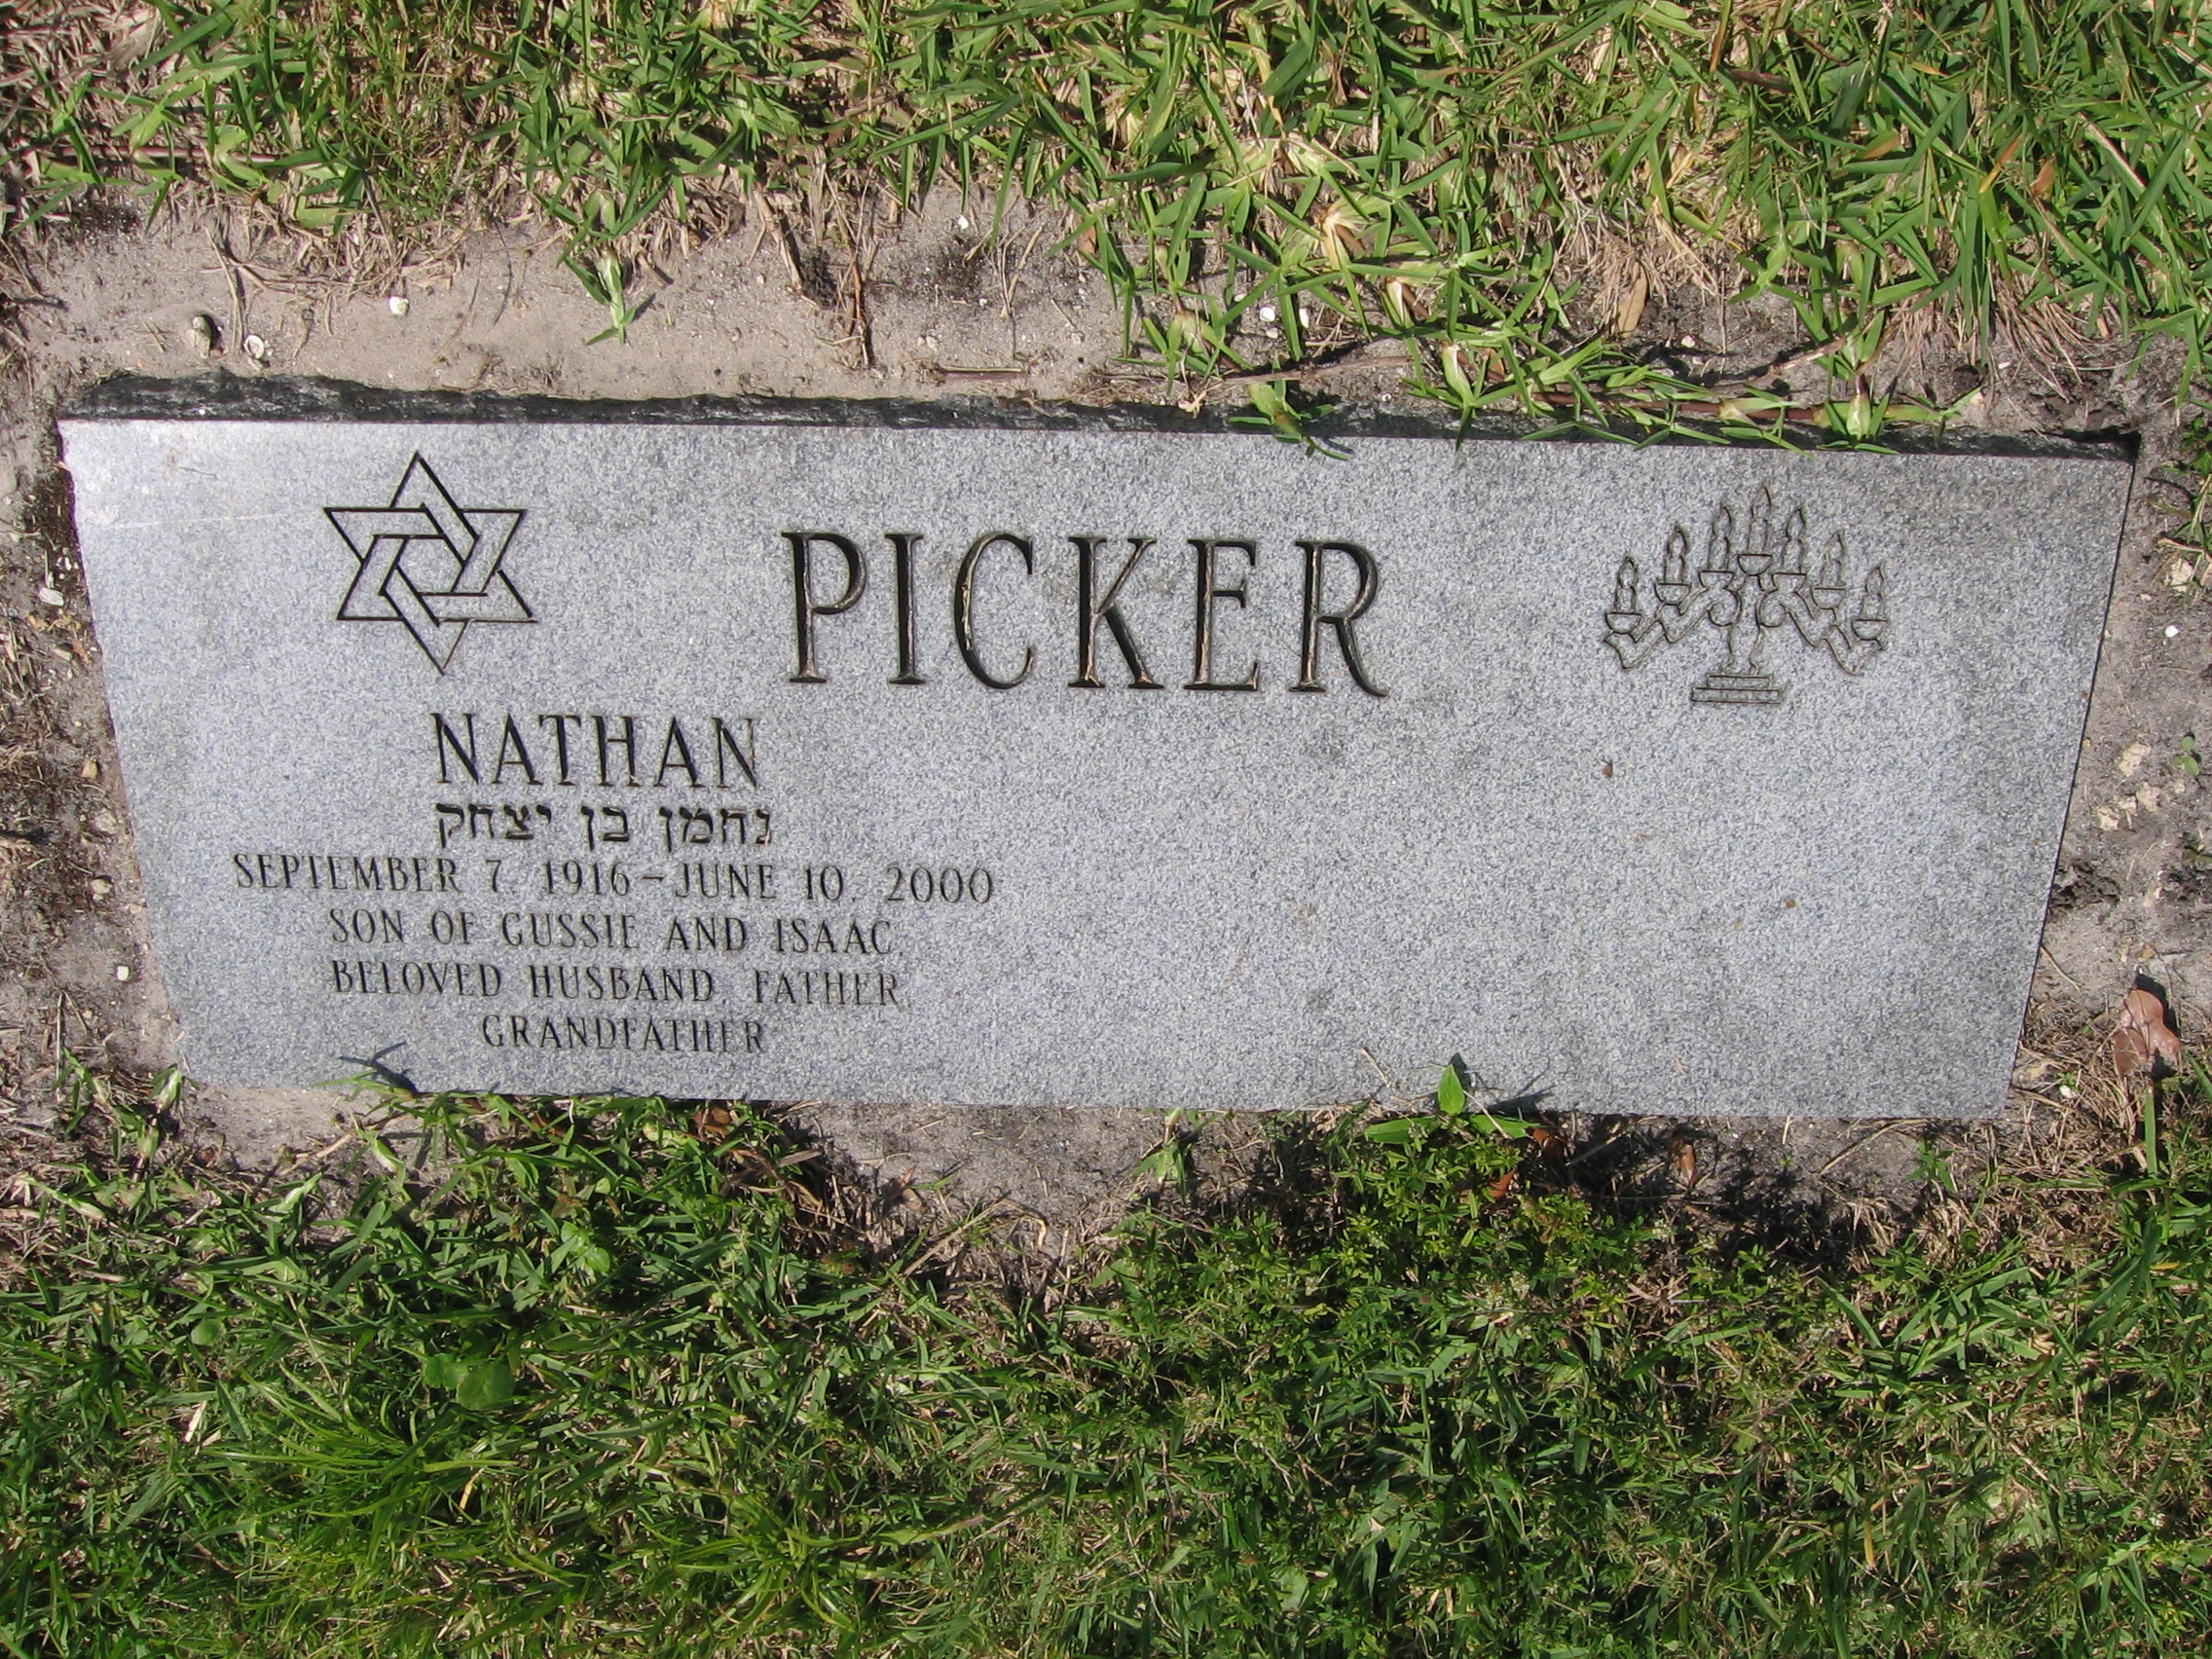 Nathan Picker